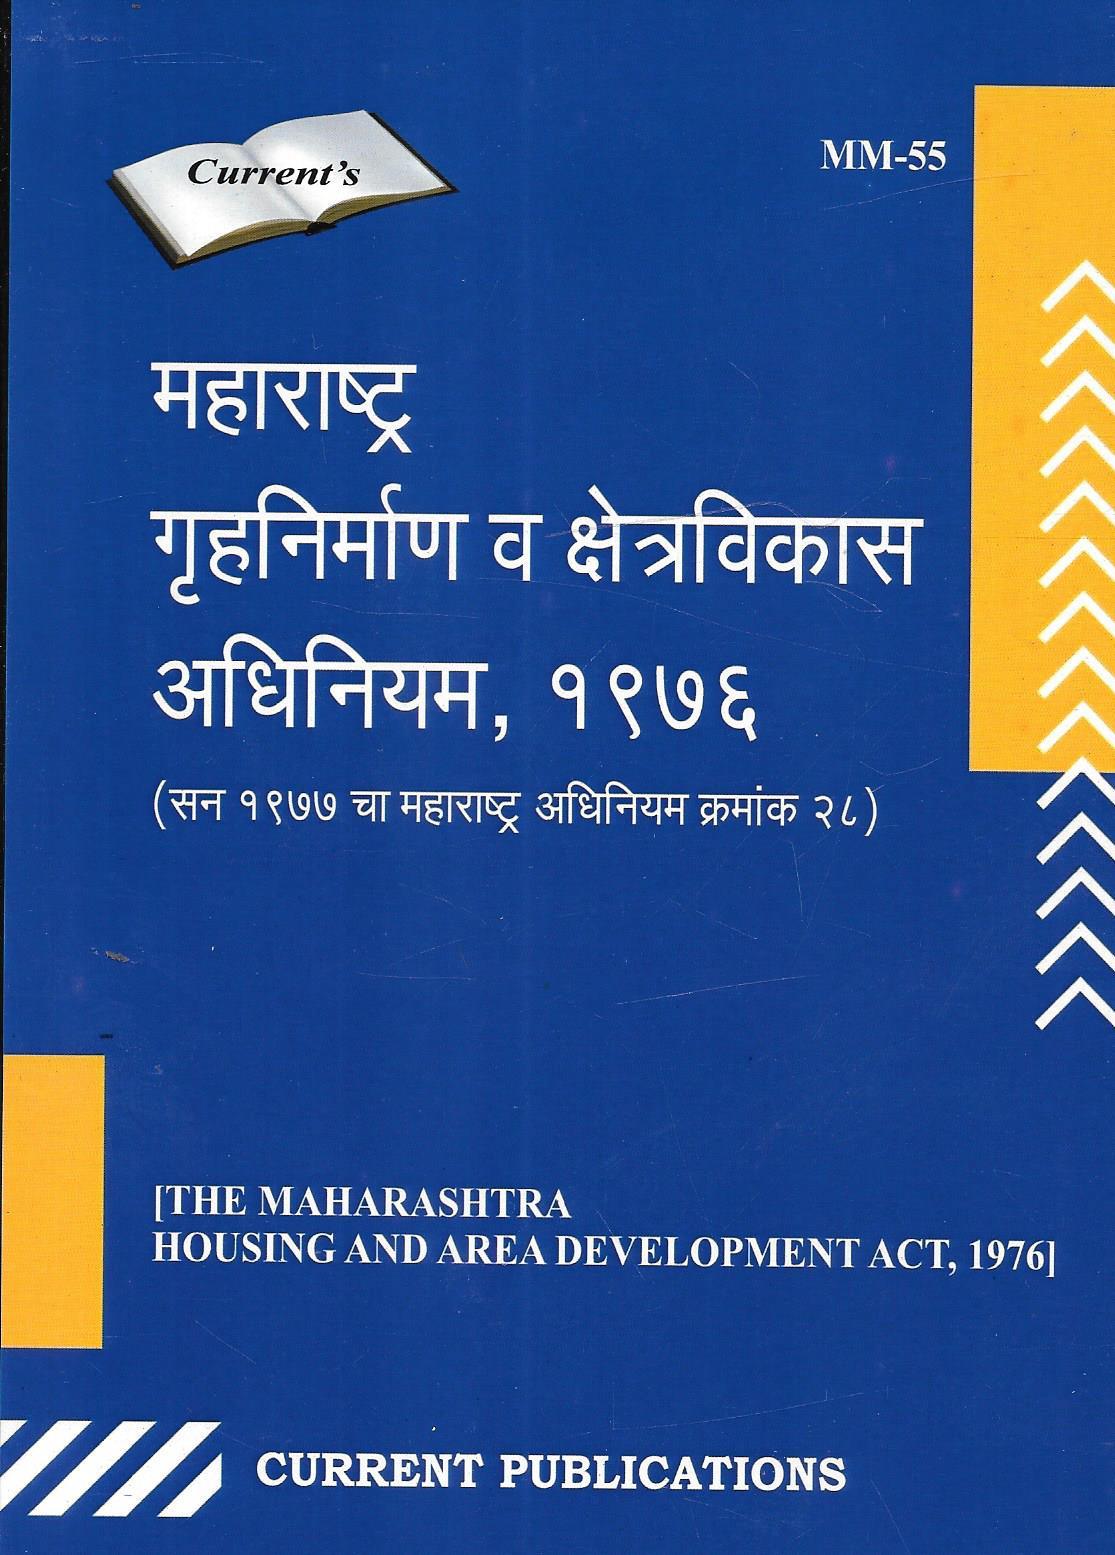 महाराष्ट्र गृहनिर्माण आणि क्षेत्र विकास अधिनियम, 1976 (The Maharashtra Housing and Area Development Act, 1976)